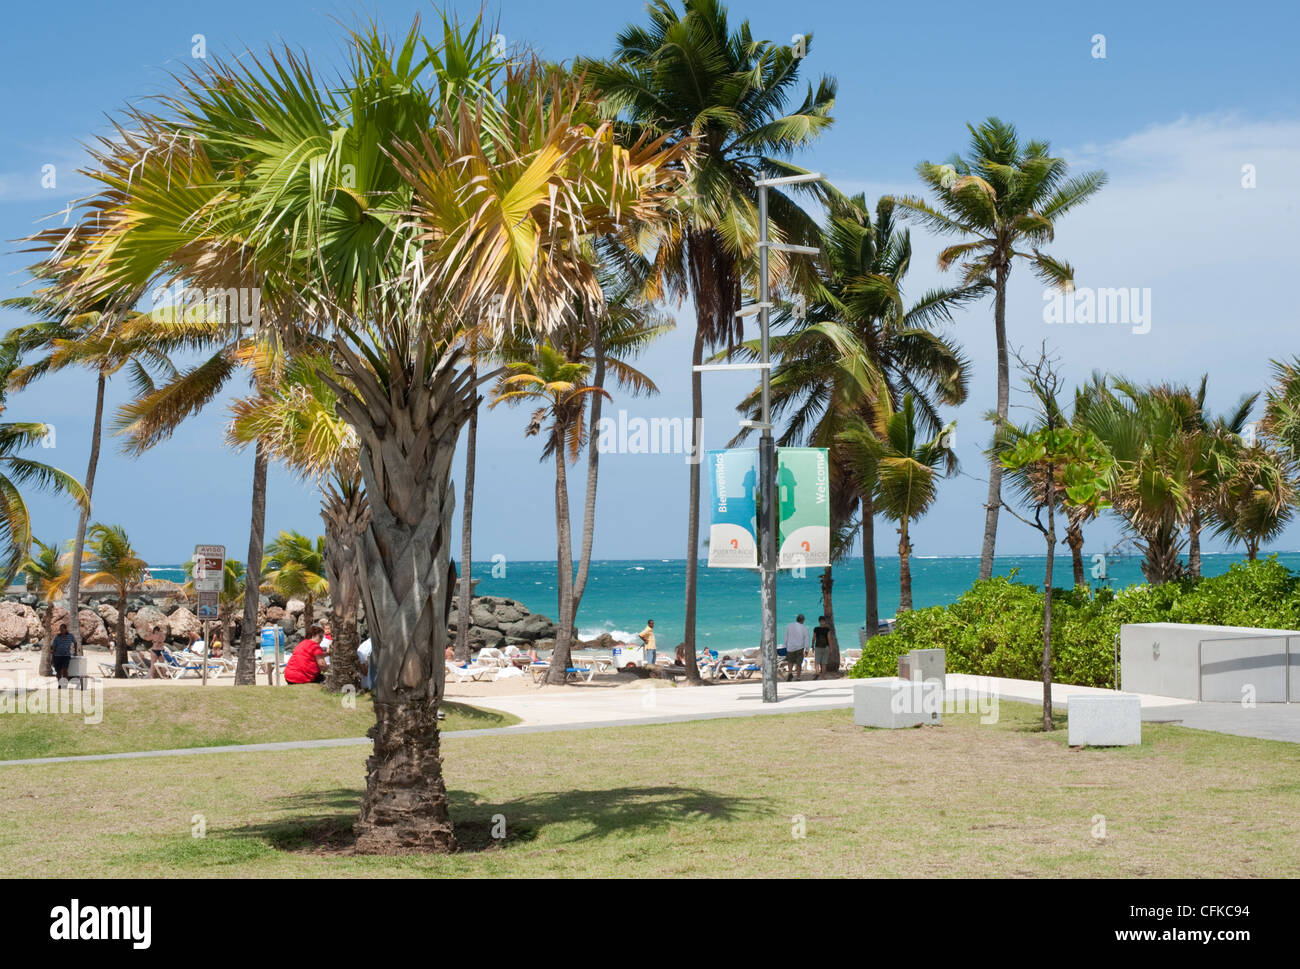 A palm tree at the entrance to Condado Beach, San Juan, Puerto Rico Stock Photo